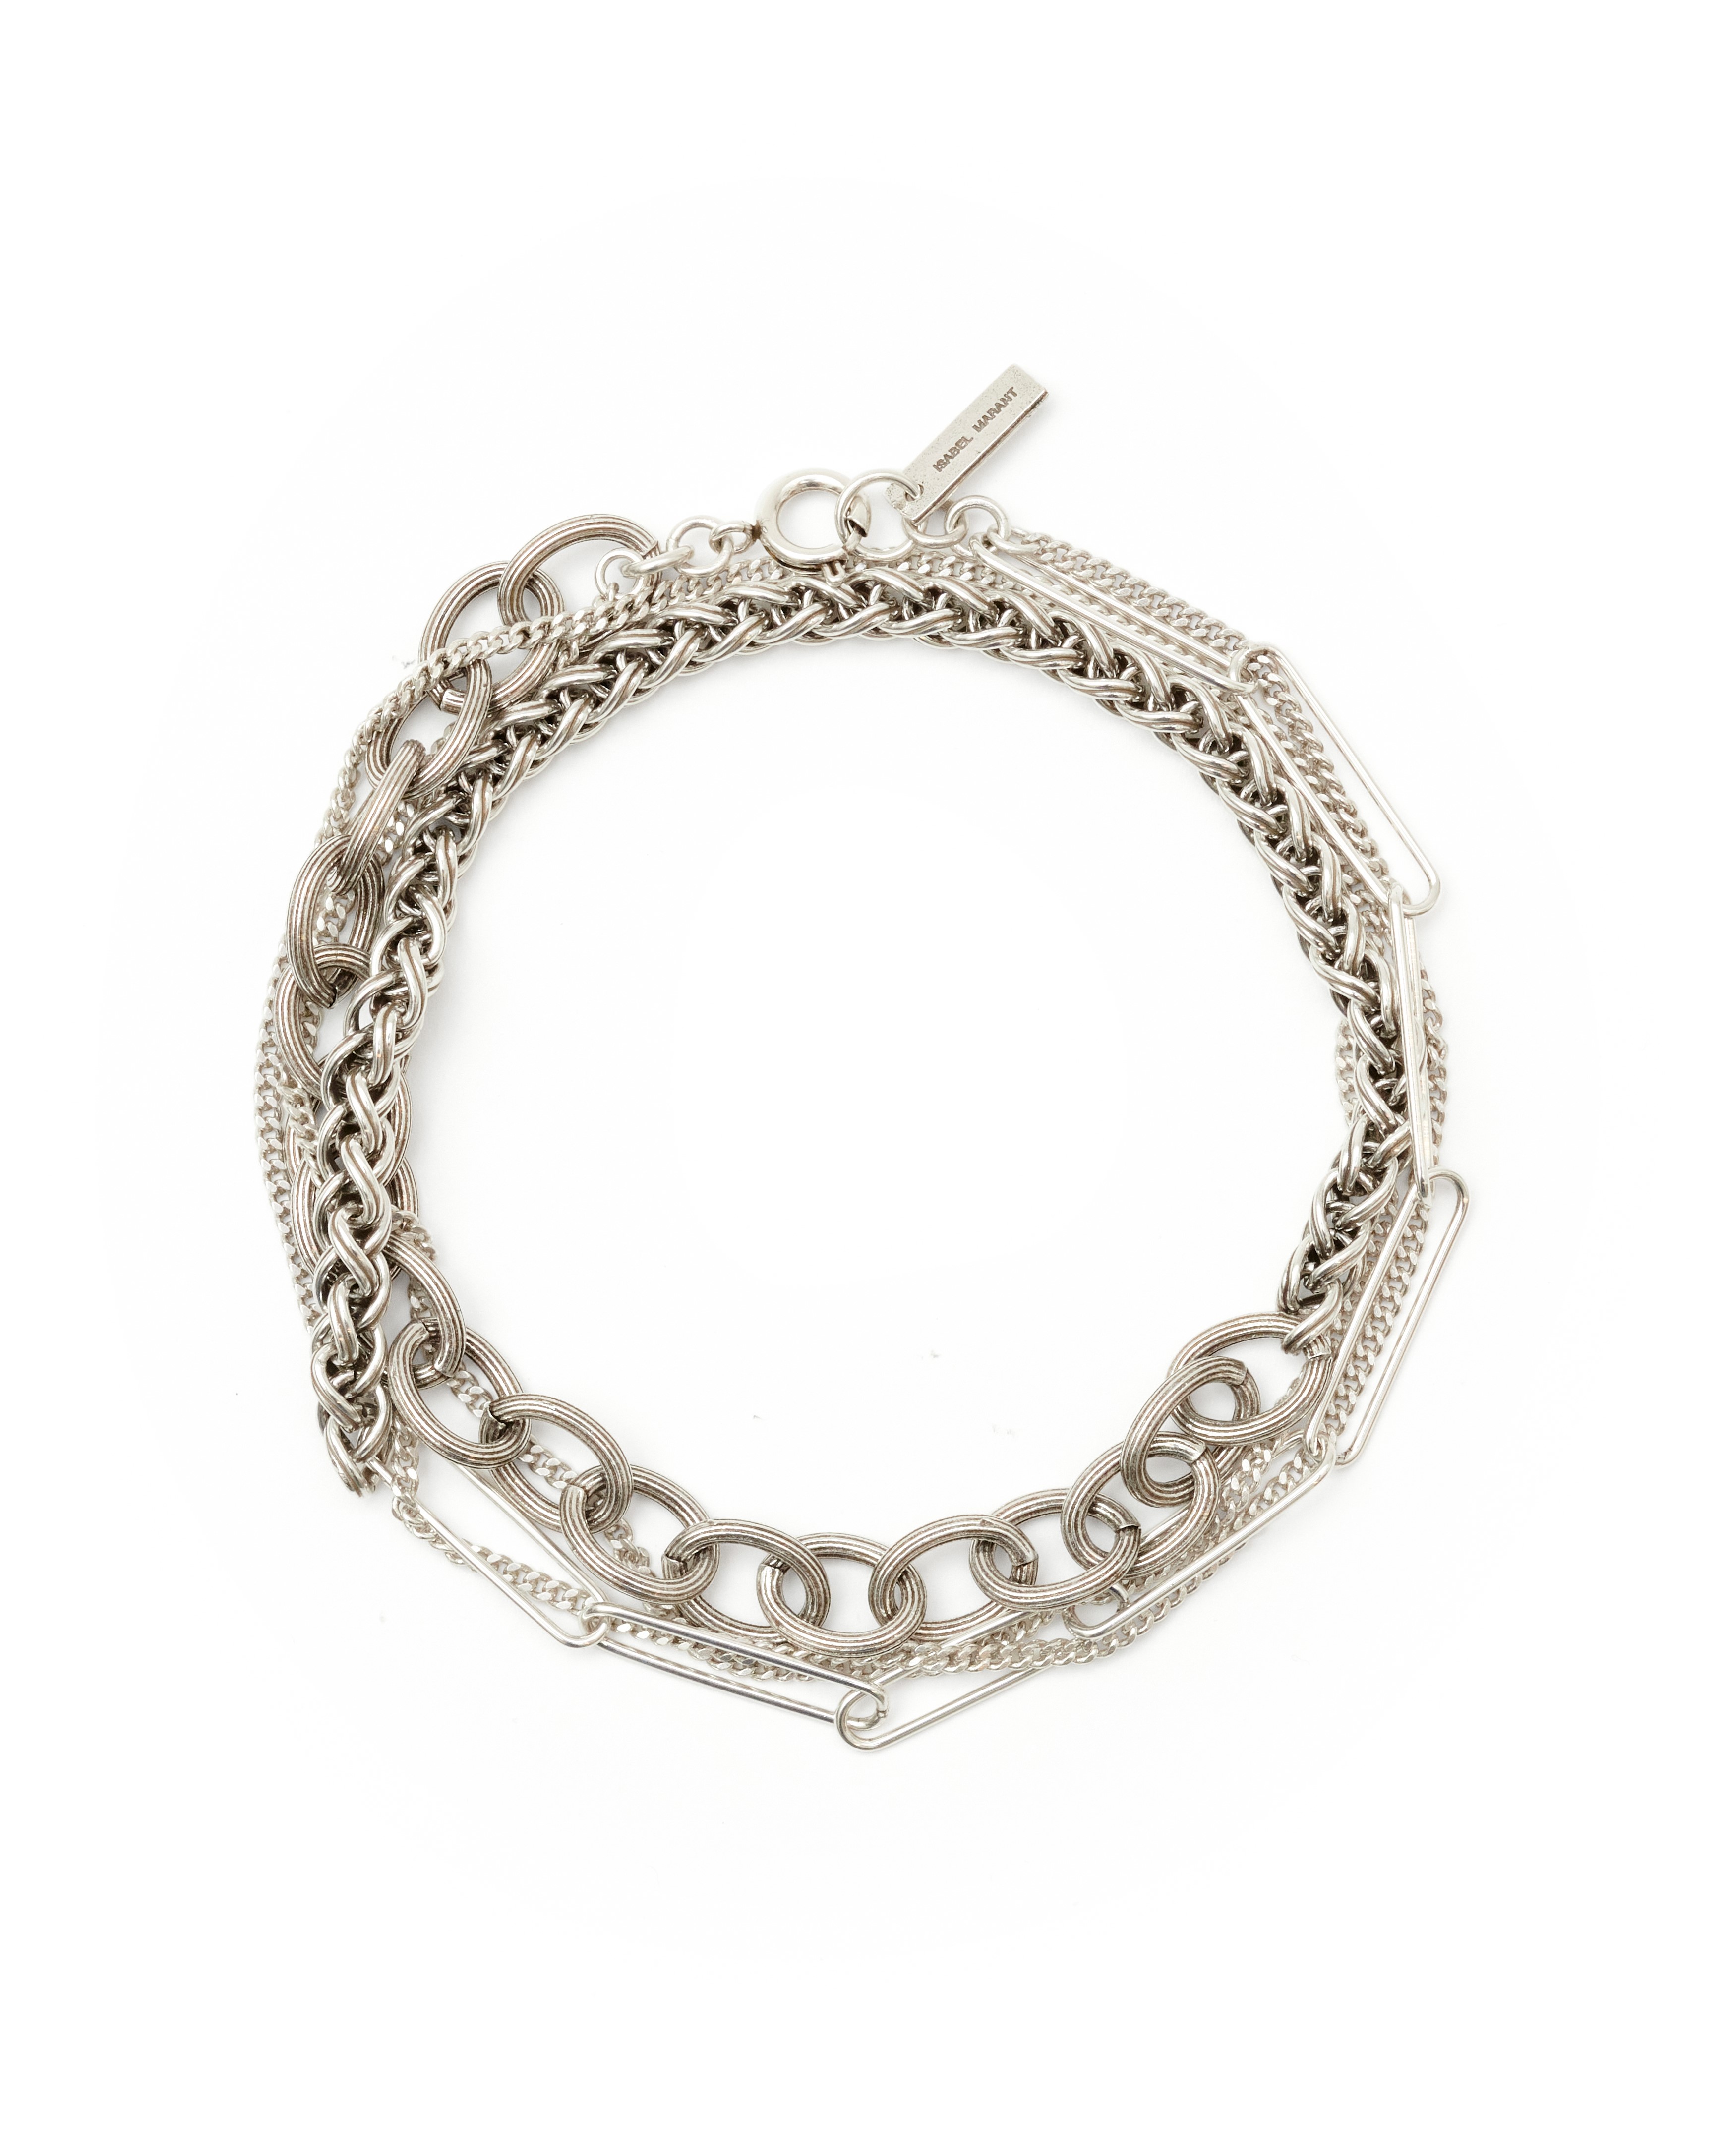 Isabel Marant Wrap Bracelet in Silver T1 / 53cm